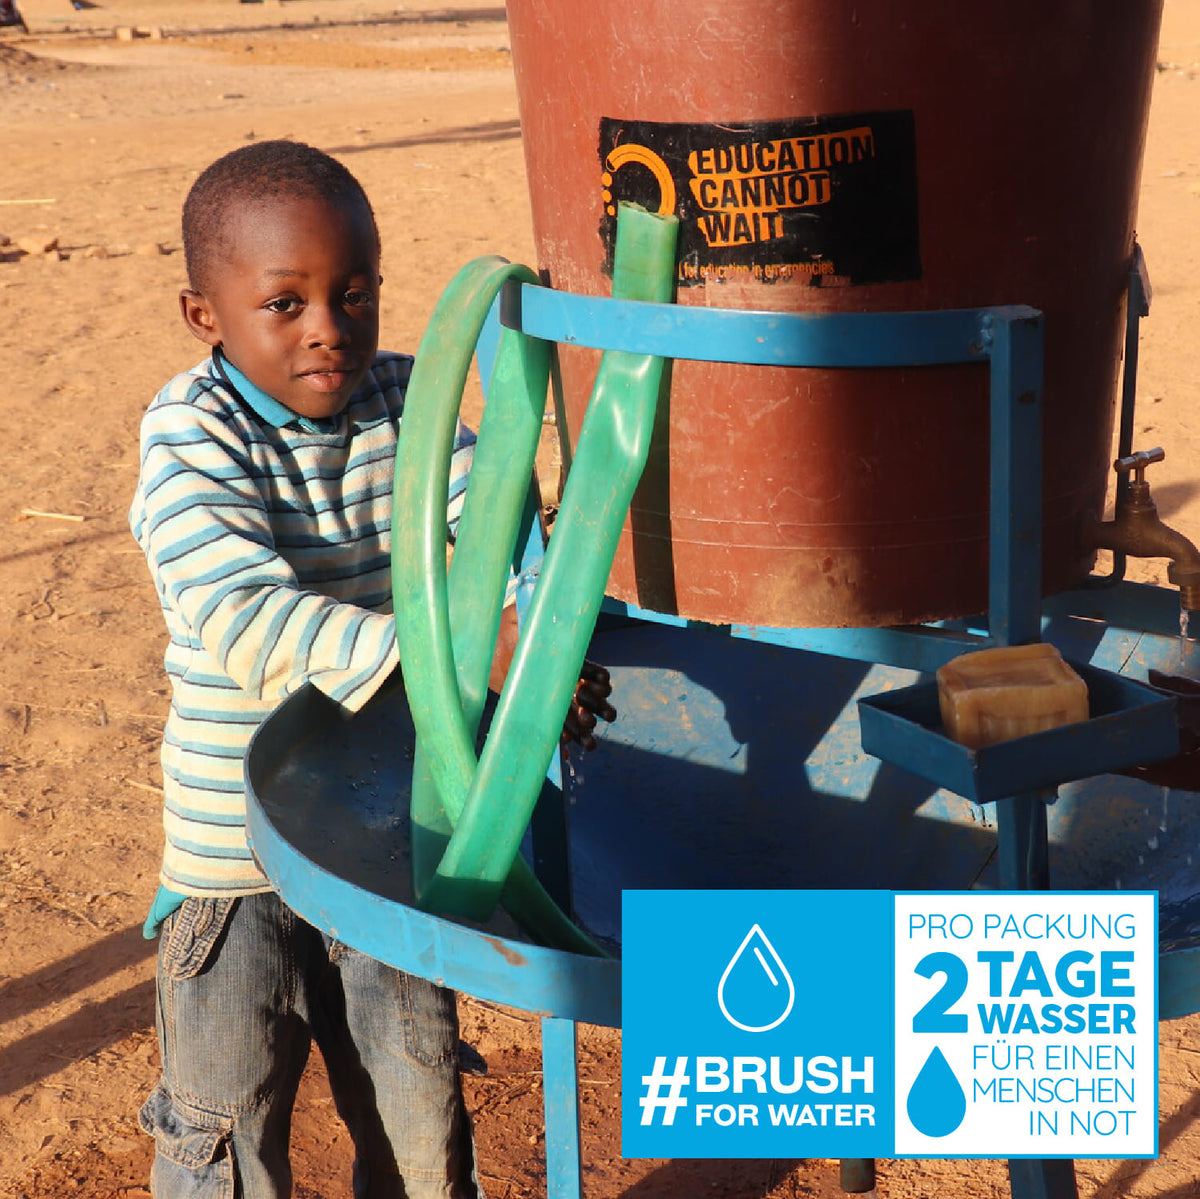 Pro Packung werden 2 Tage Wasser für einen Menschen in Not gespendet #brushforwater